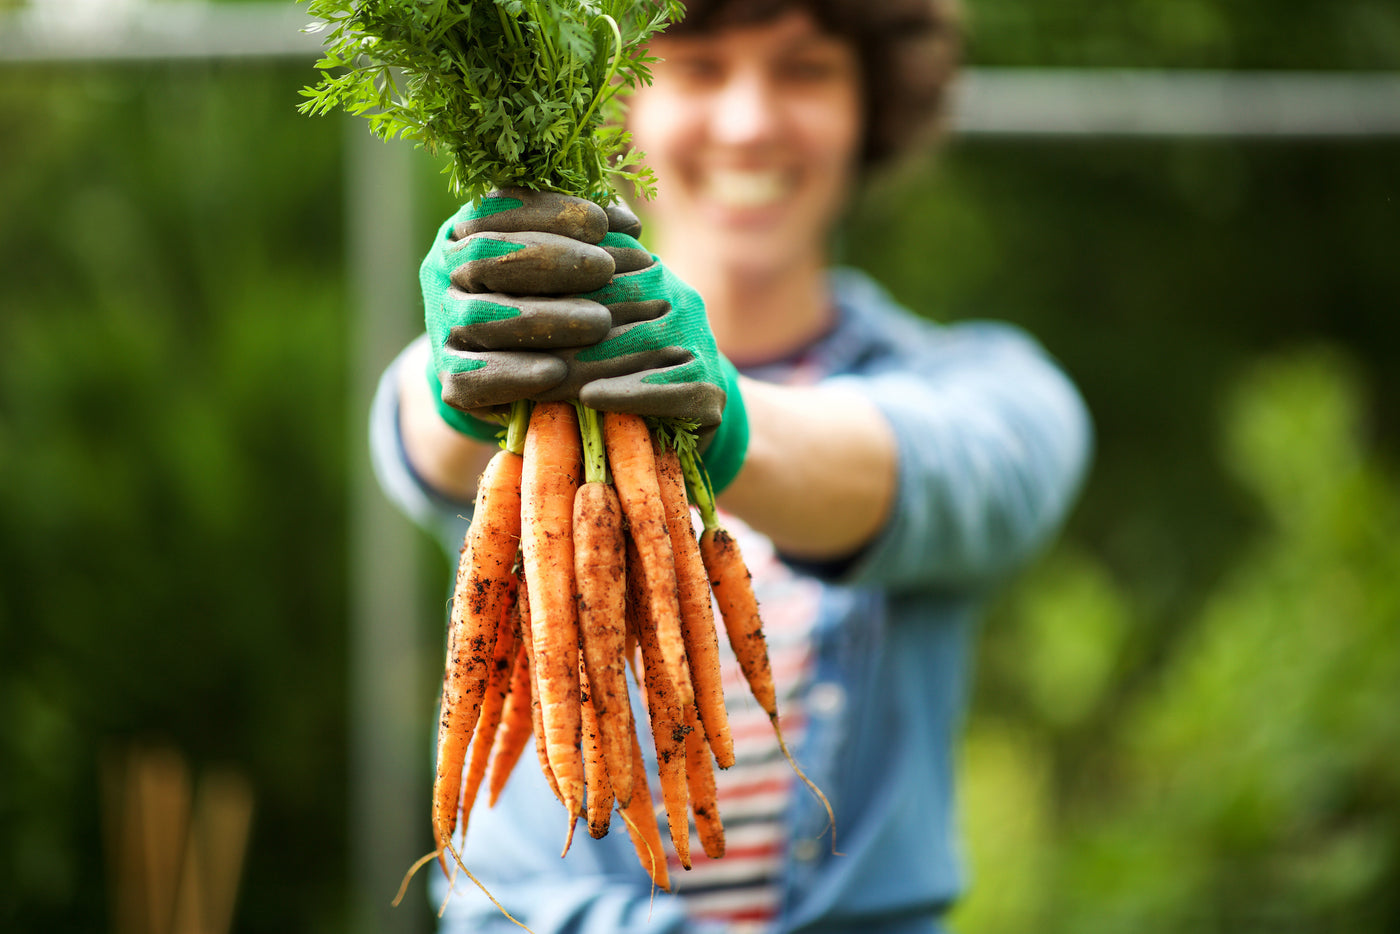 Eine Frau hält ein Bündel Karotten in die Luft und freut sich über den diesjährigen üppigen Ernteerfolg. Die Karotten wurden mit einem rein organisch gedüngt.